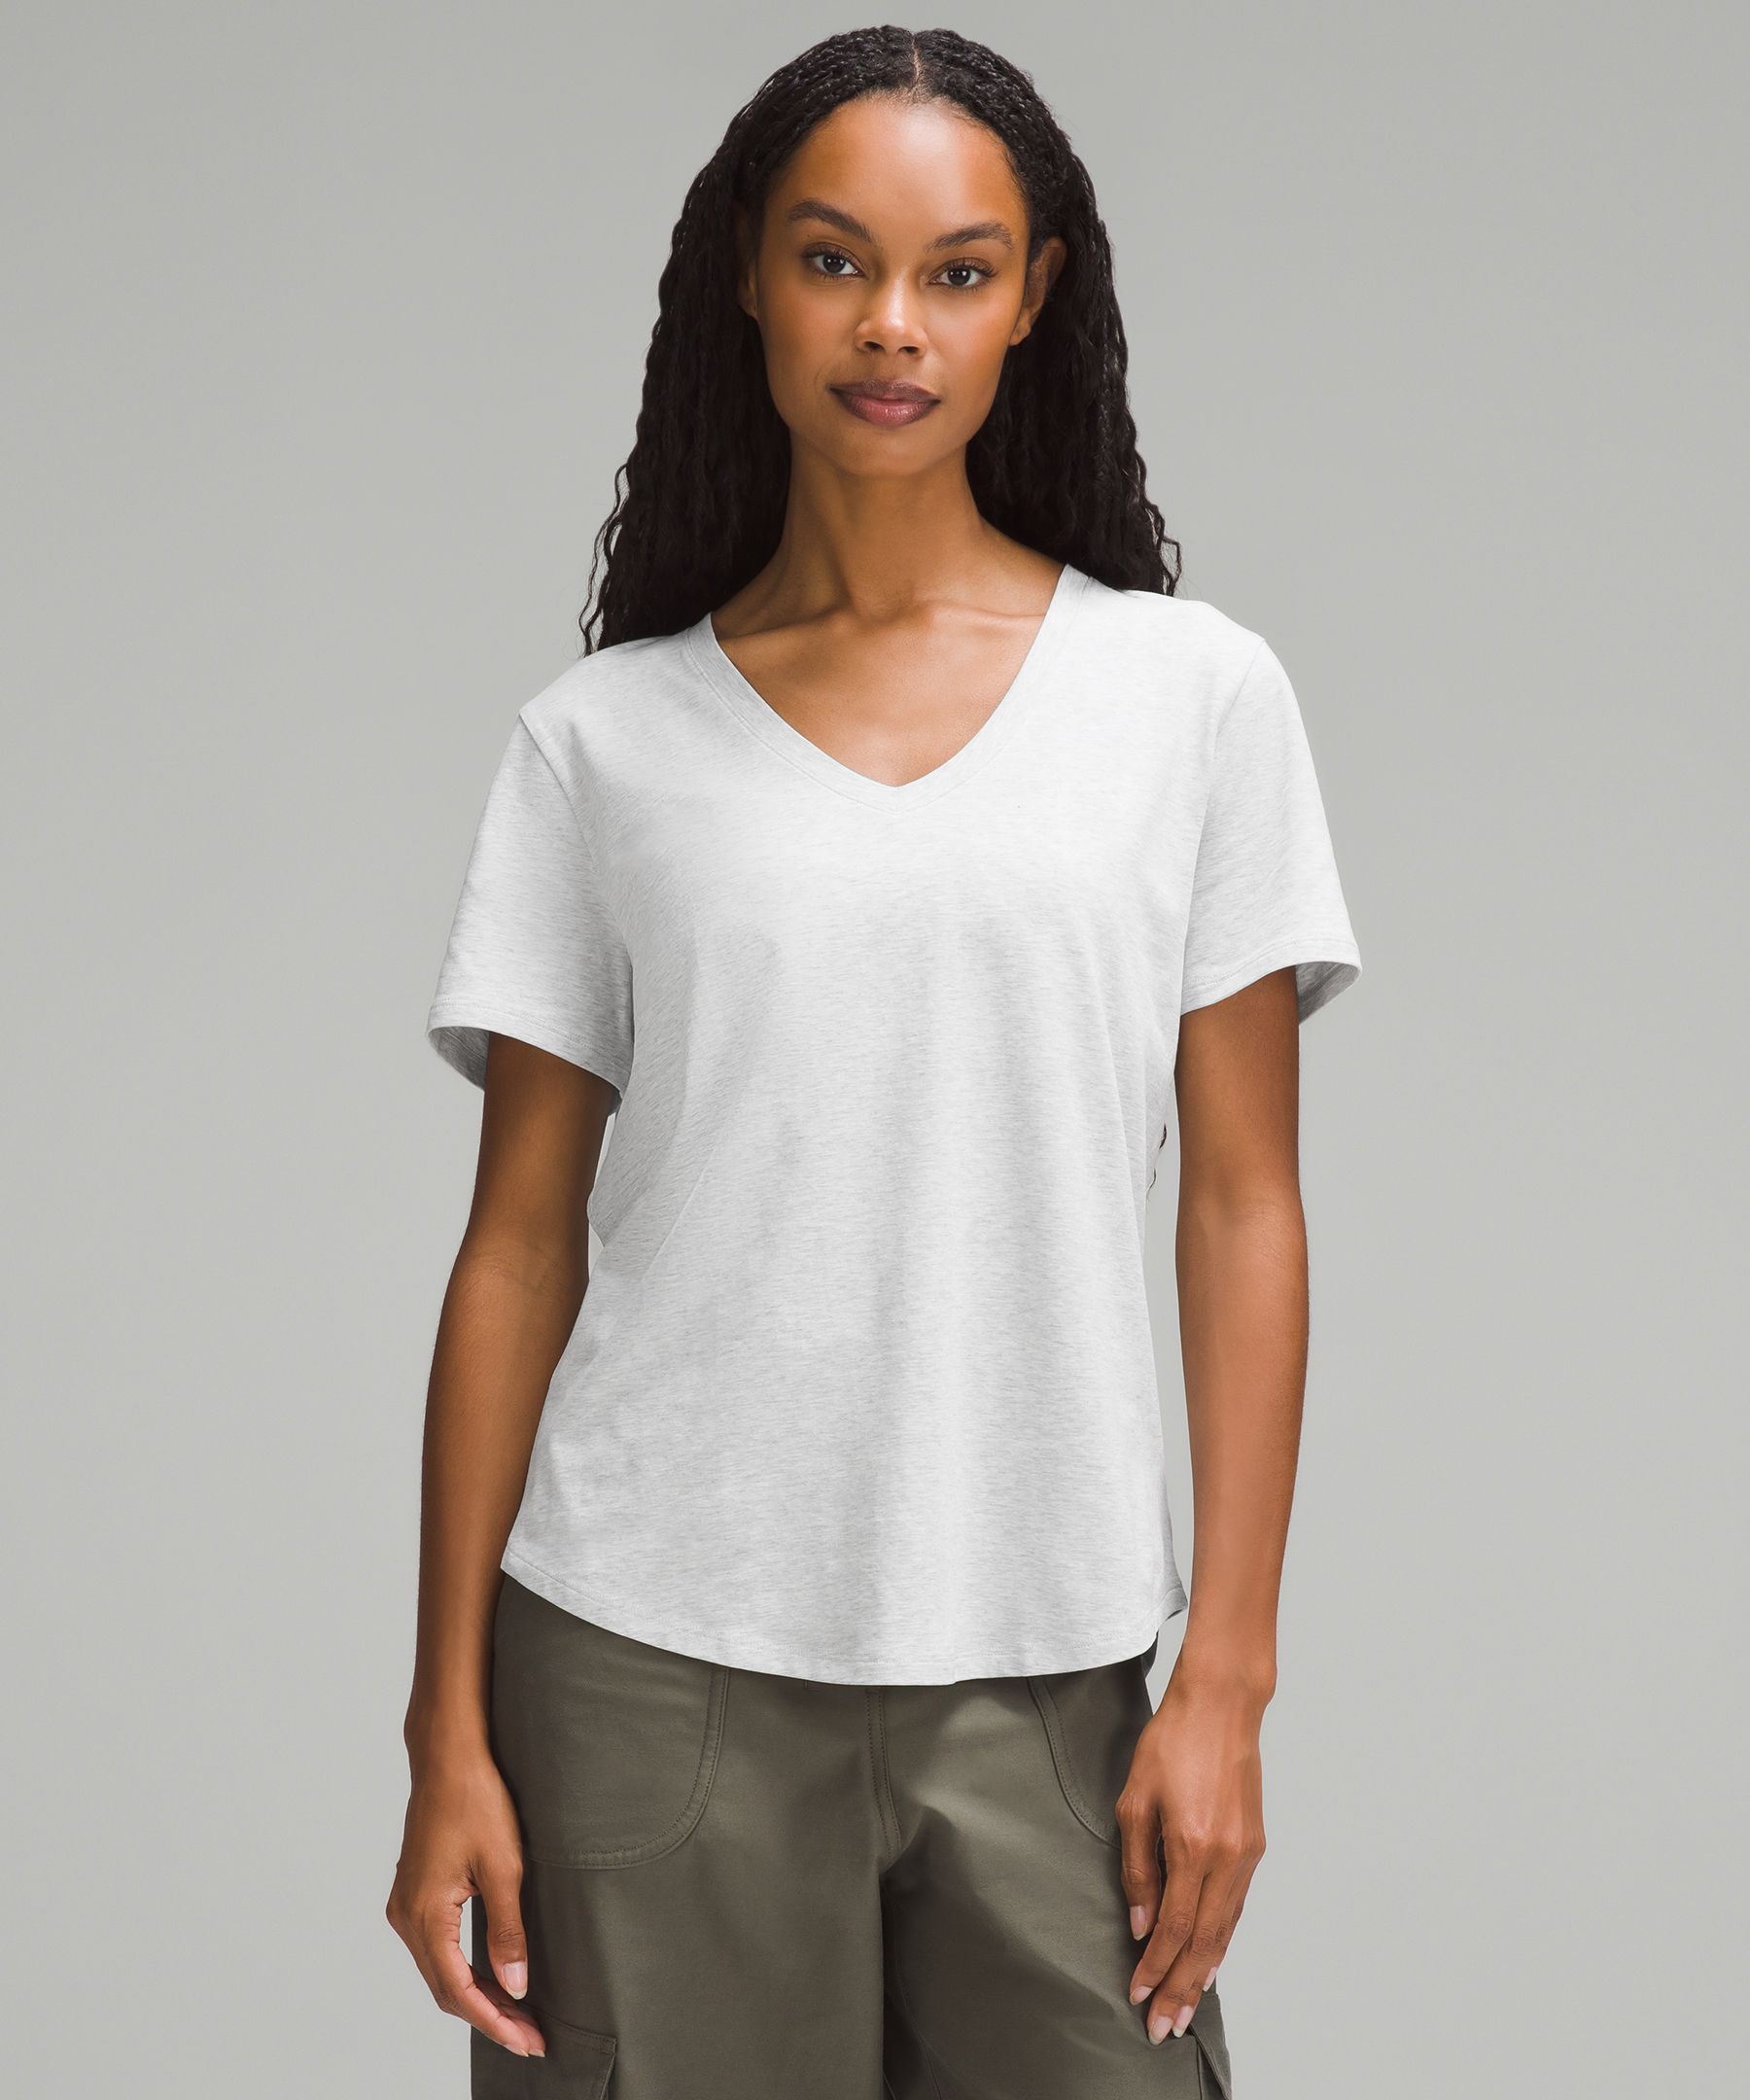 Women Lululemon white short sleeve T-shirt. Size 10. Prev. owned